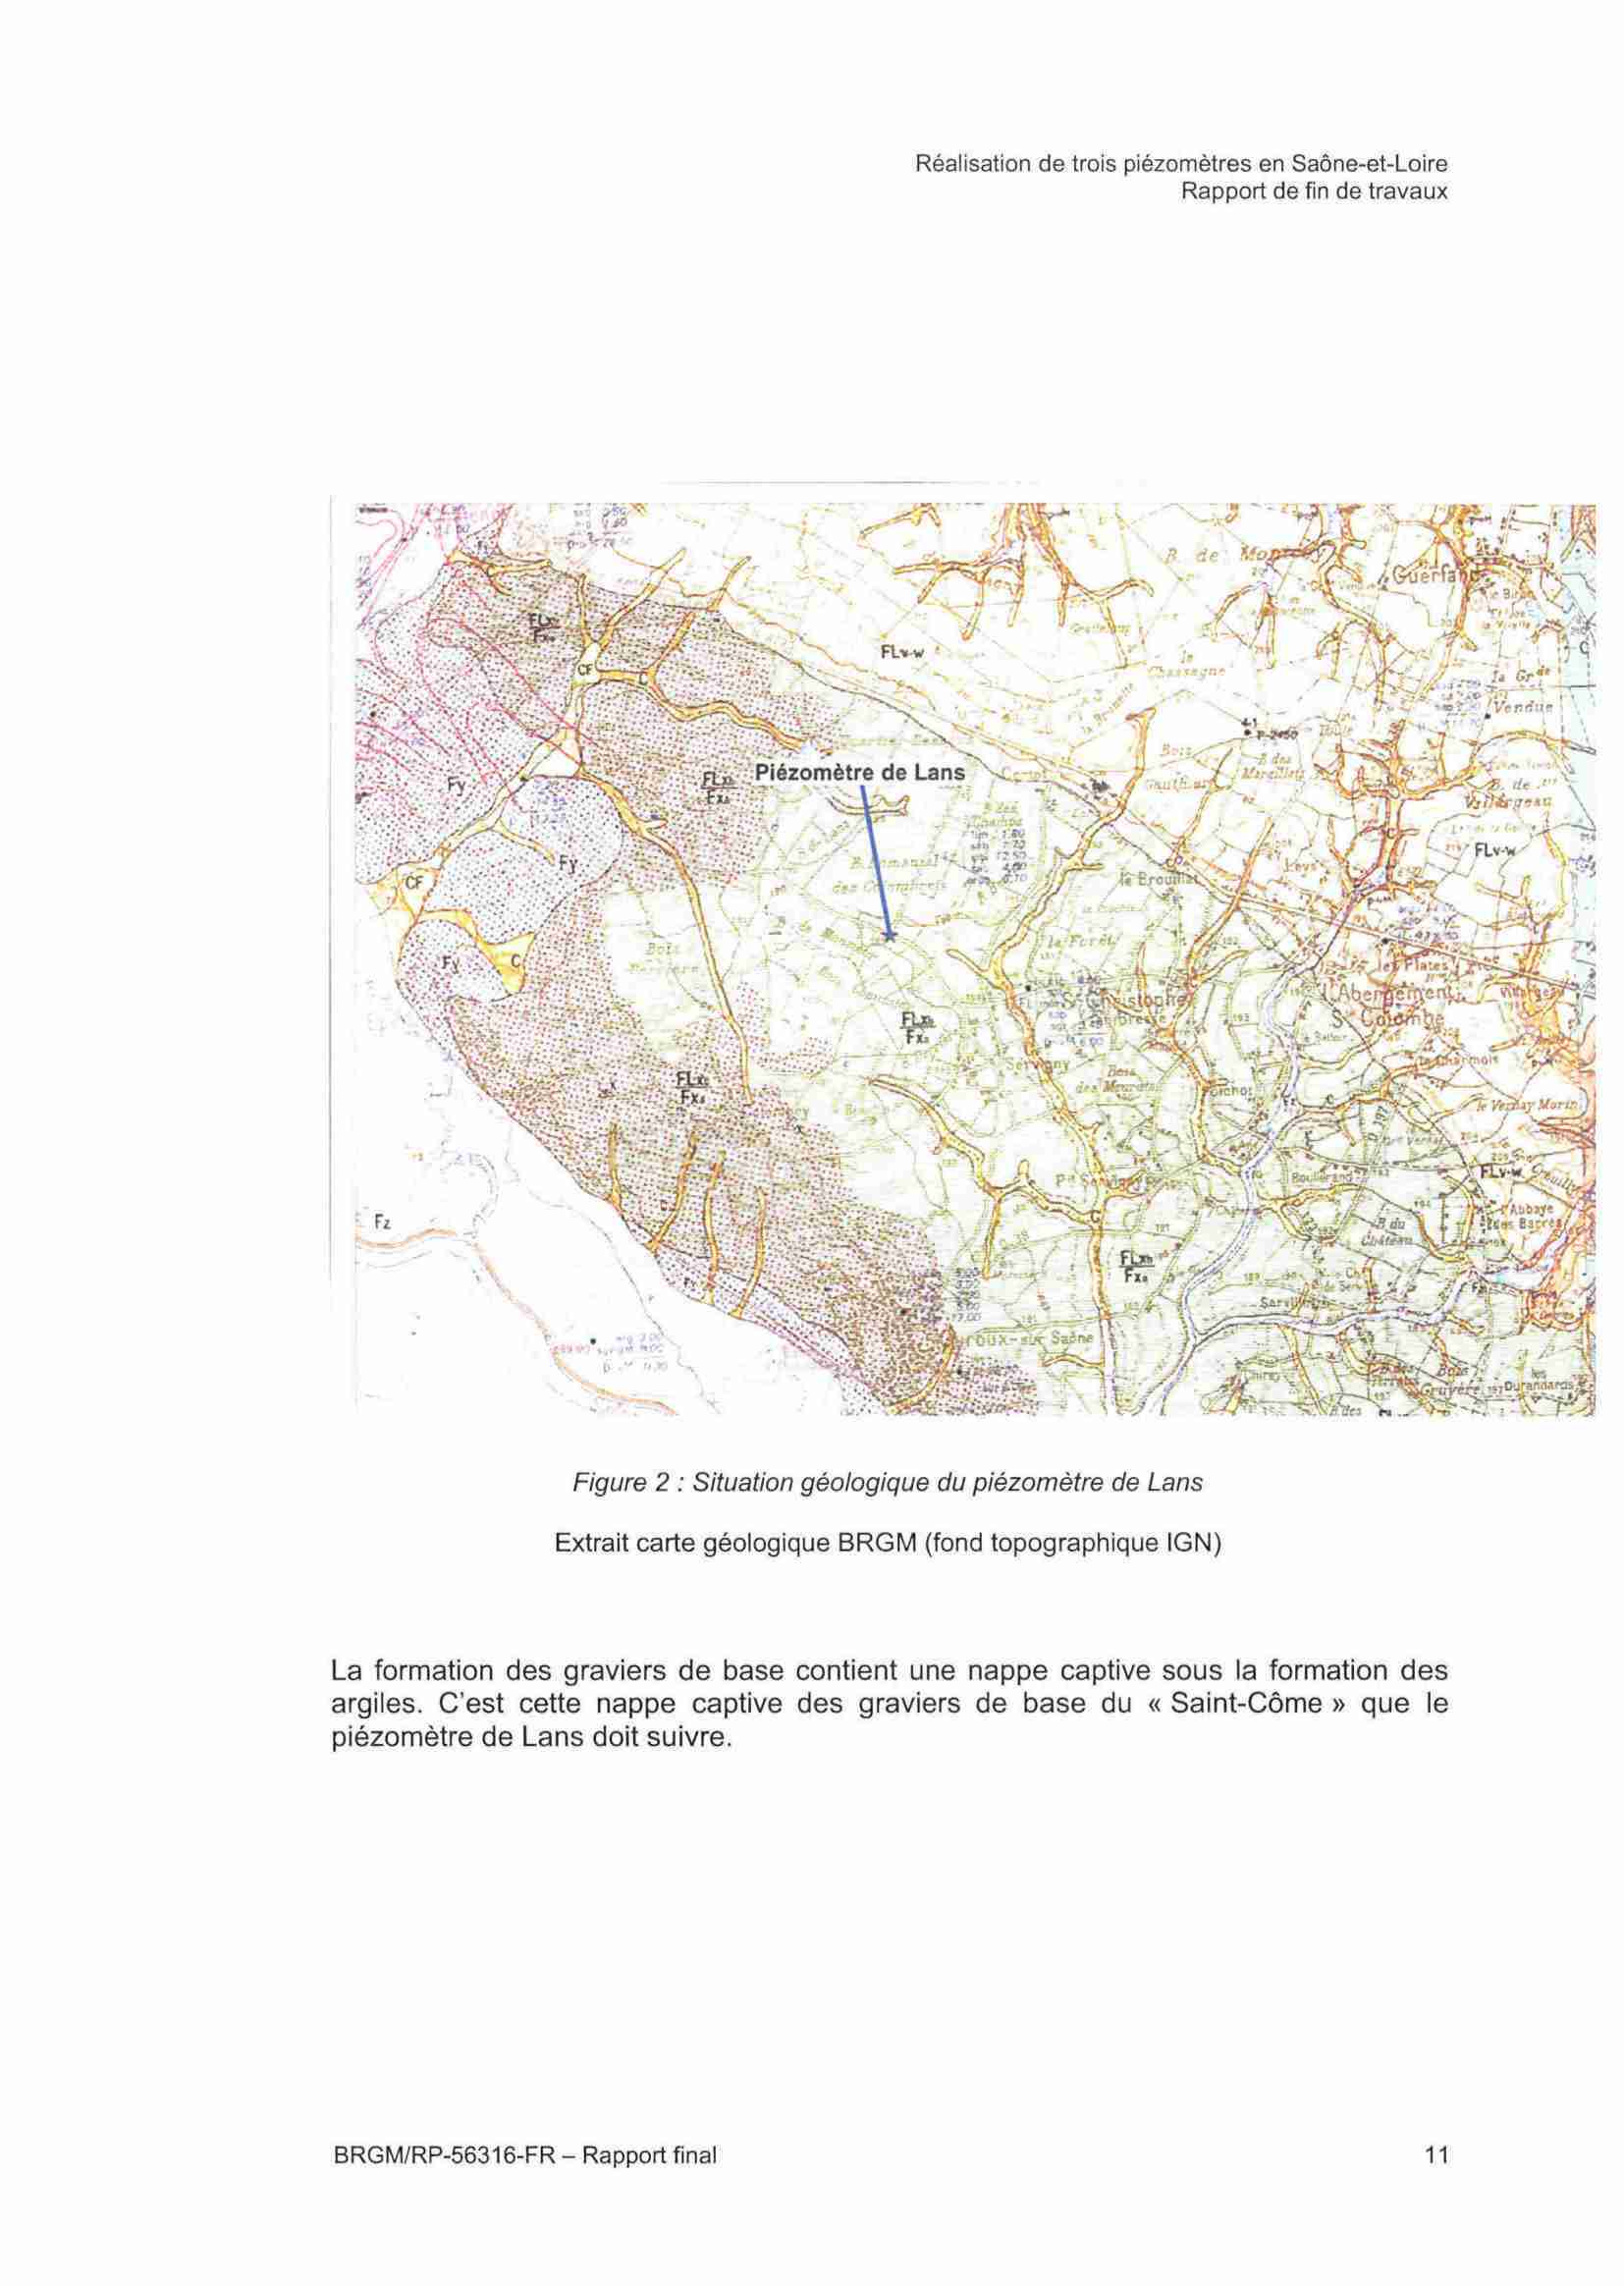 *-**ïi^ Figure 2 : Situation géologique du piézomètre de Lans Extrait carte géologique B R G M (fond topographique IGN) La formation des graviers de base contient une nappe